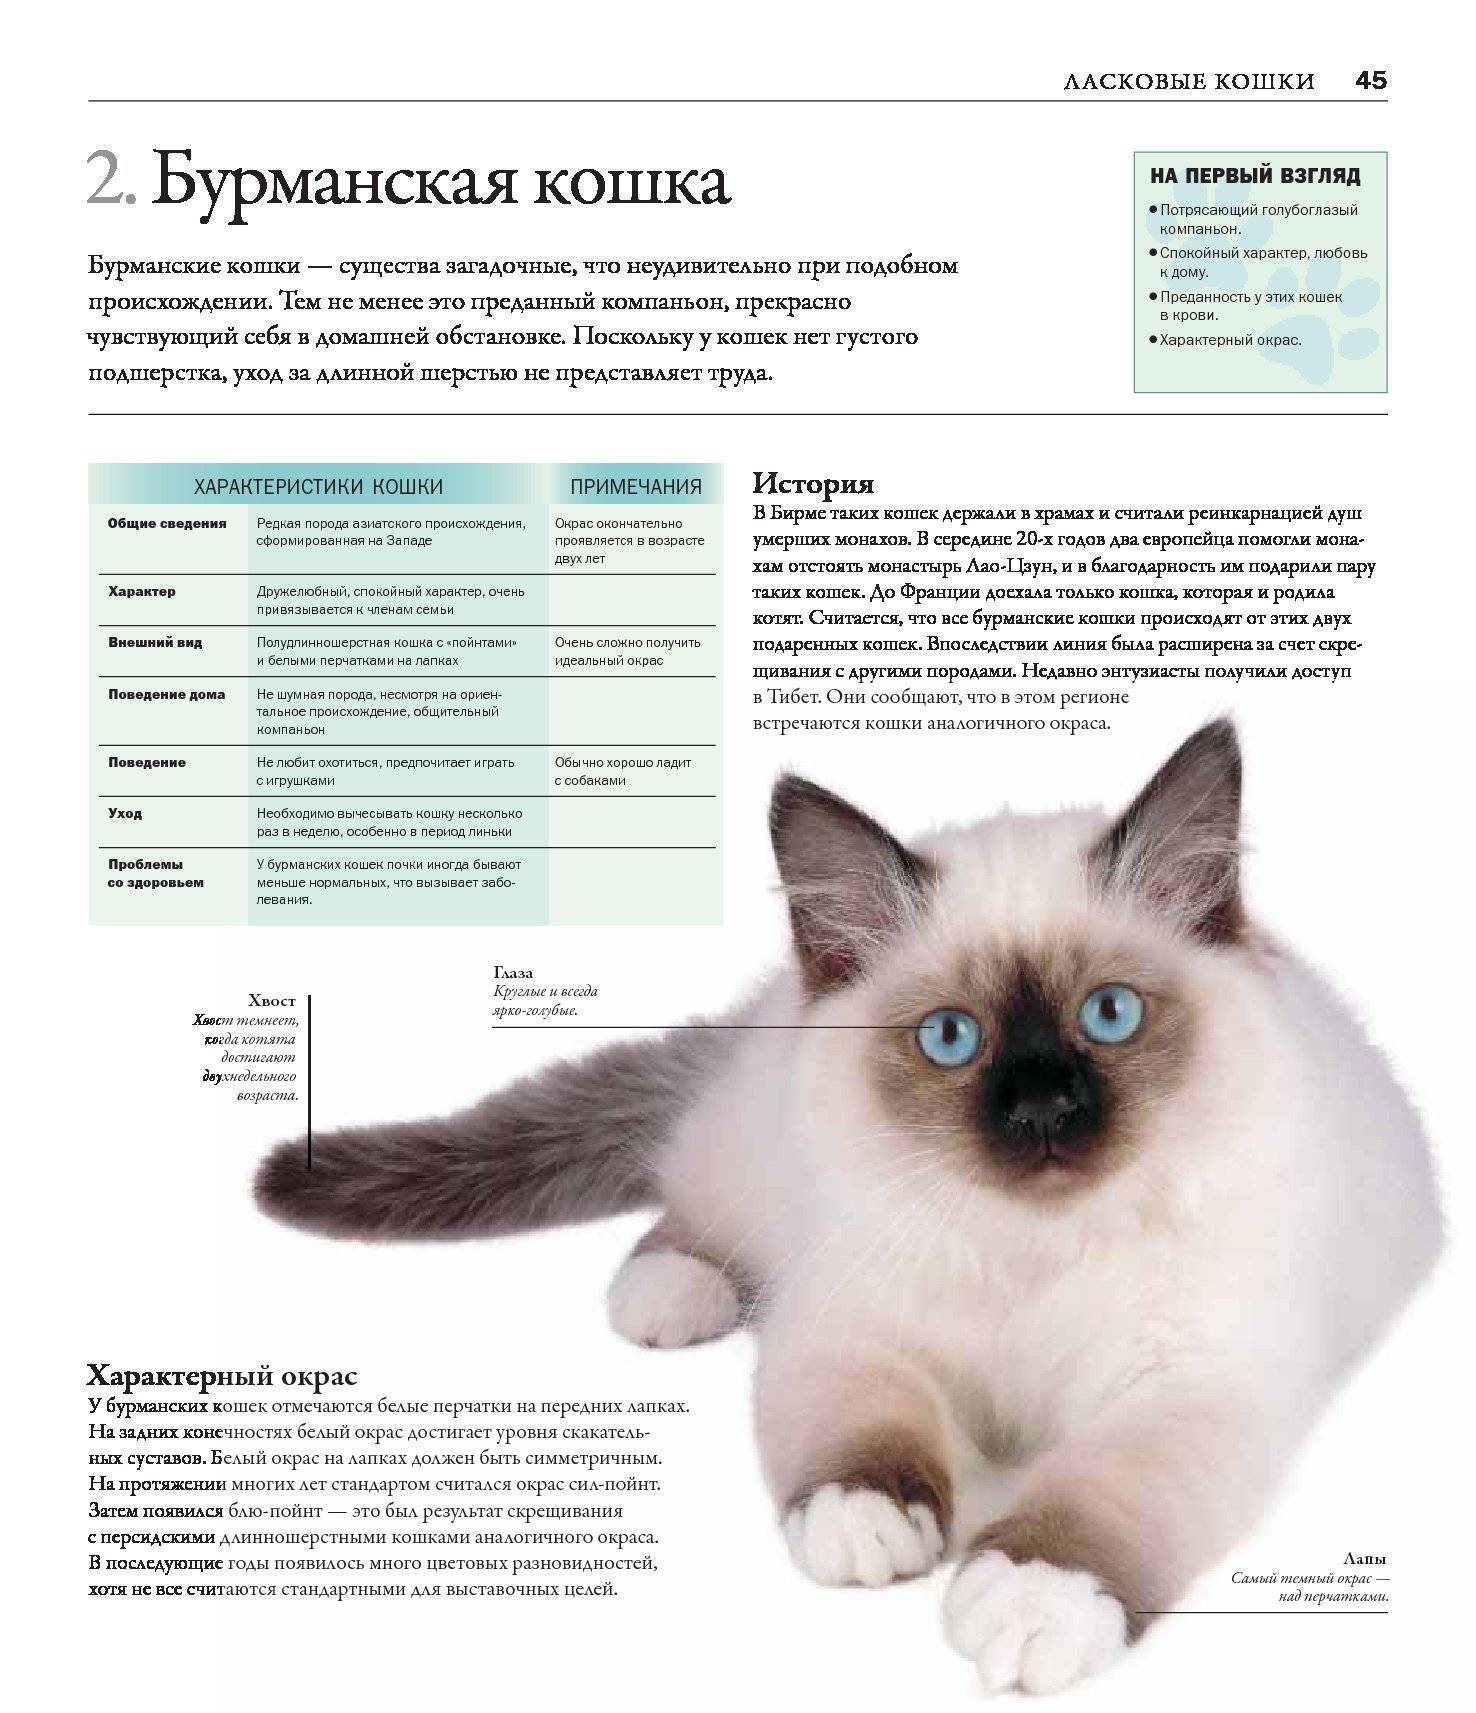 Сибирская кошка: фото, описание породы, уход, кормление, достоинства - zoosecrets